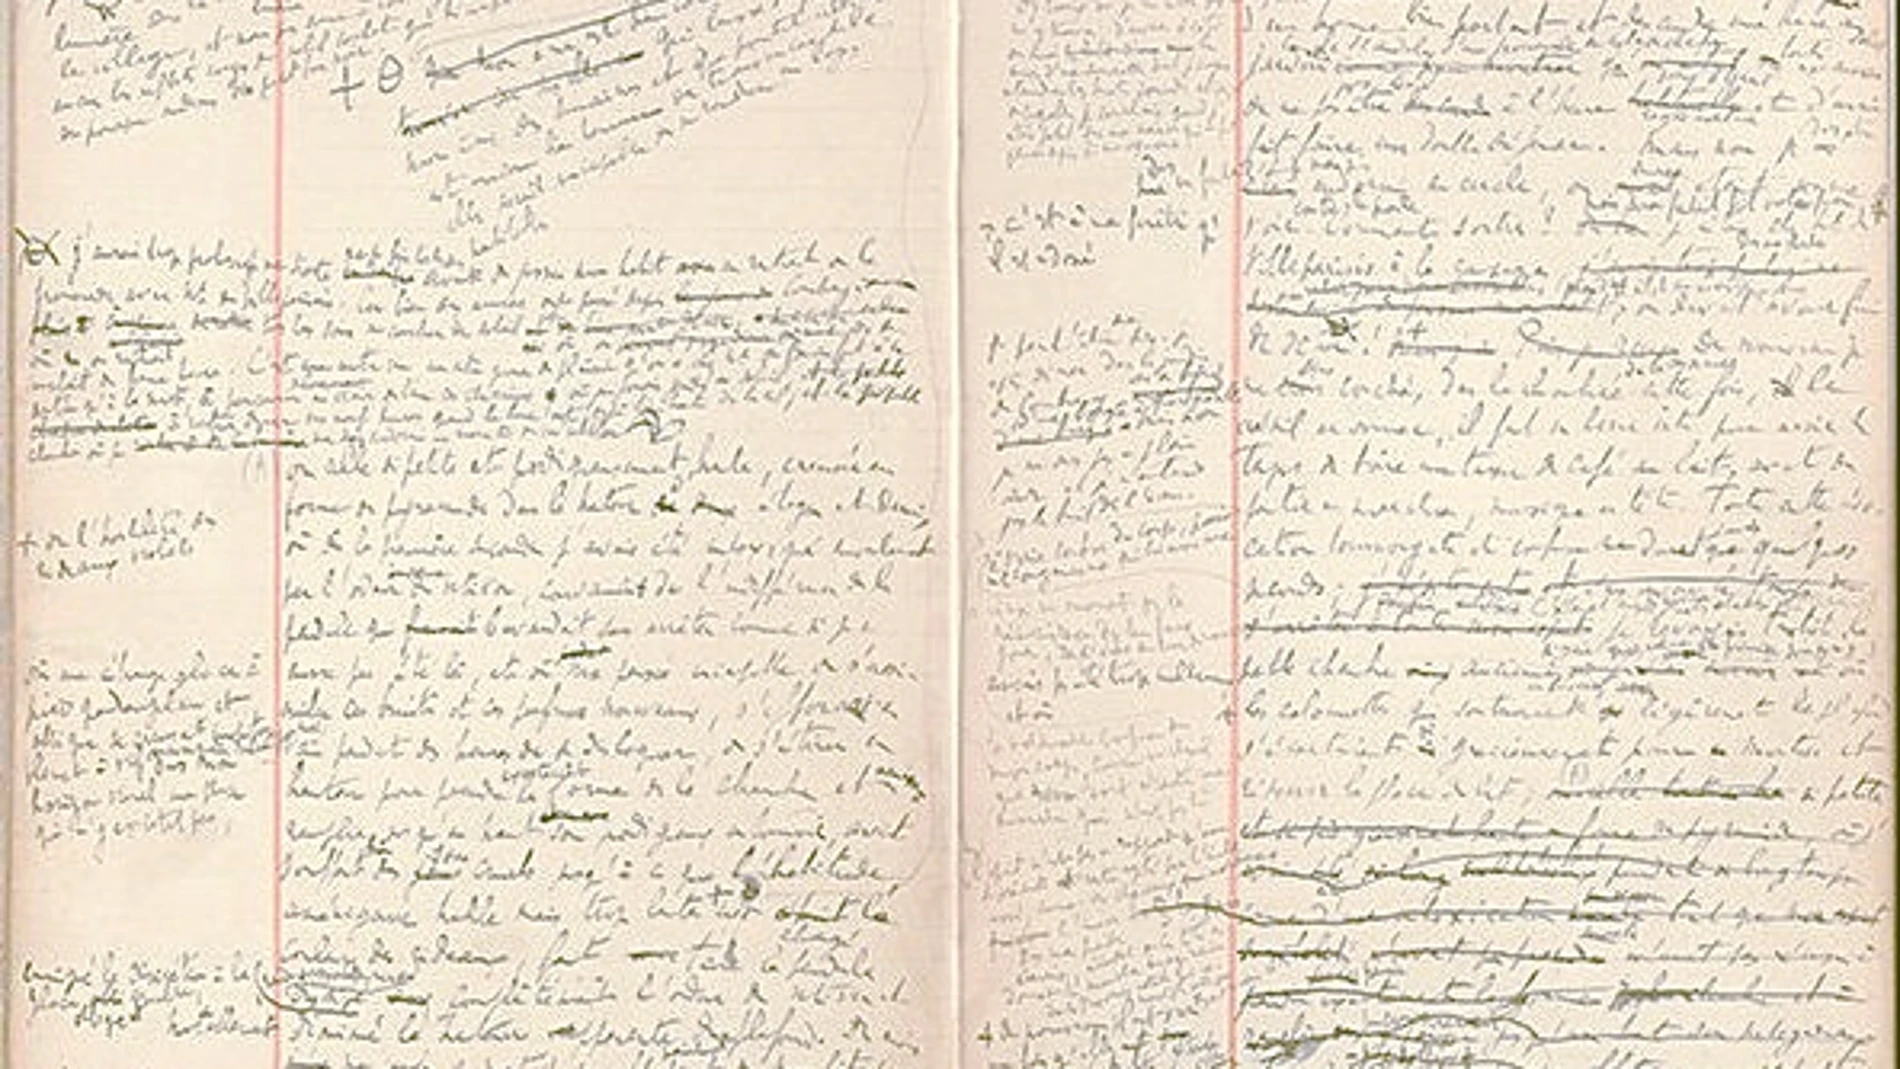 Doble página con anotaciones manuscritas por el autor, donde se pueden ver sus tachaduras y correcciones